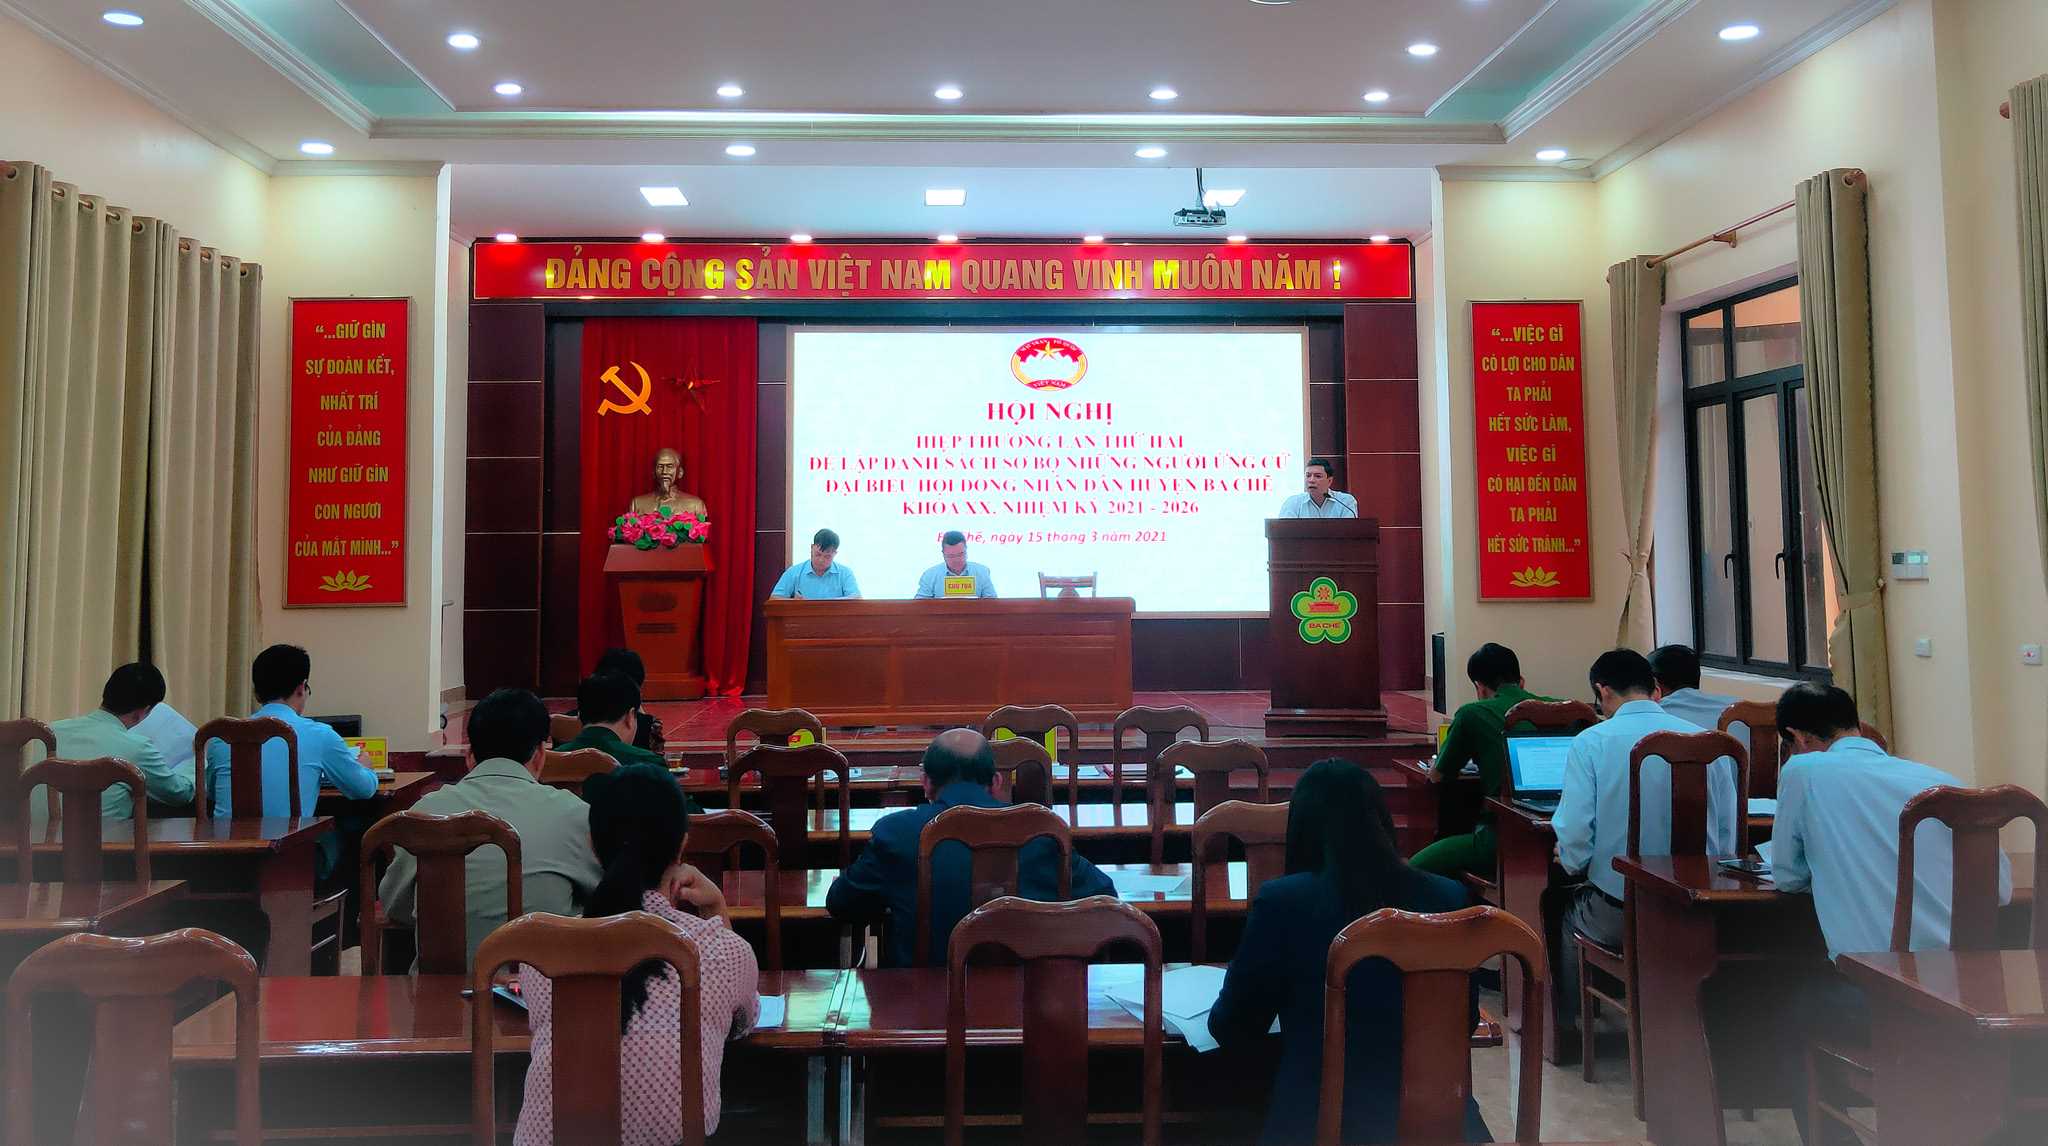 Ủy ban MTTQ huyện Ba Chẽ tổ chức hội nghị hiệp thương lần 2, ngày 16/3/2021. Ảnh: Trung tâm TT&VH Ba Chẽ.